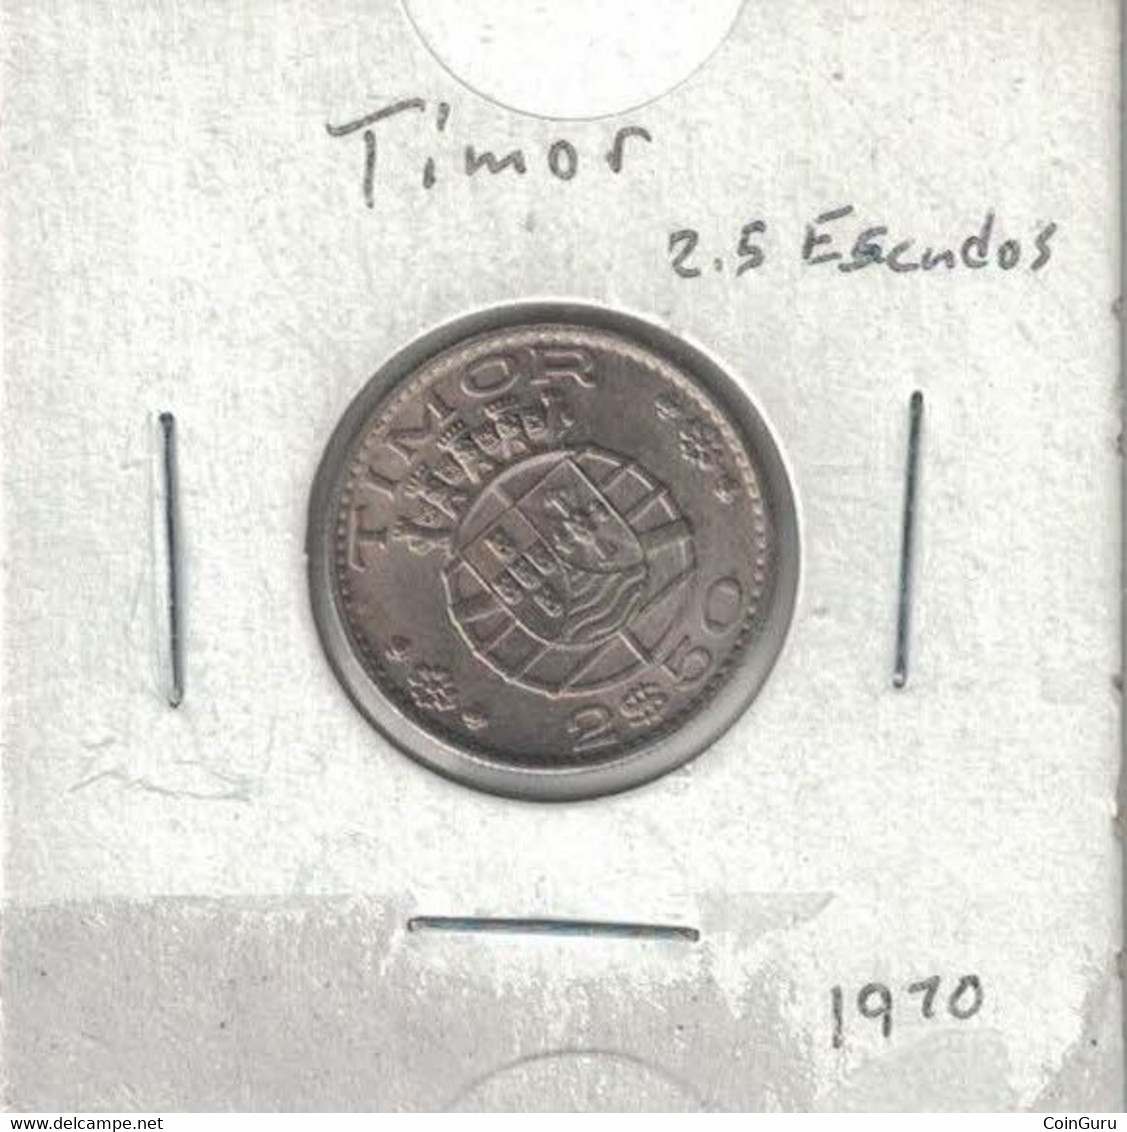 Timor 2$50 2.5 Escudos 1970 High Grade - Timor